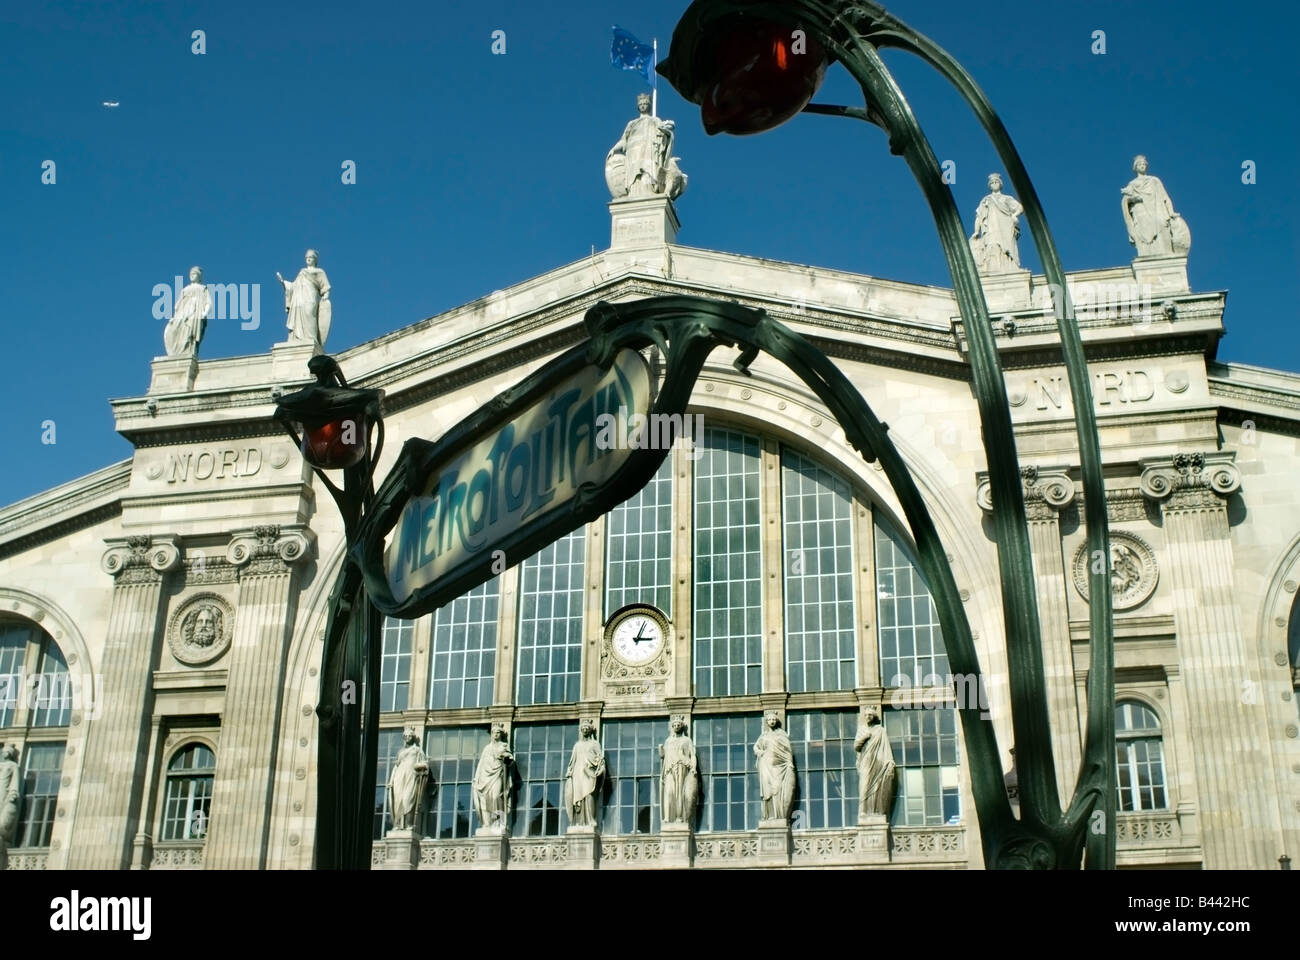 París Francia, Gare du Nord París, histórica estación de tren, detalle, fachada exterior frontal, señal de metro 'Eurostar Train Station', arquitectura Foto de stock